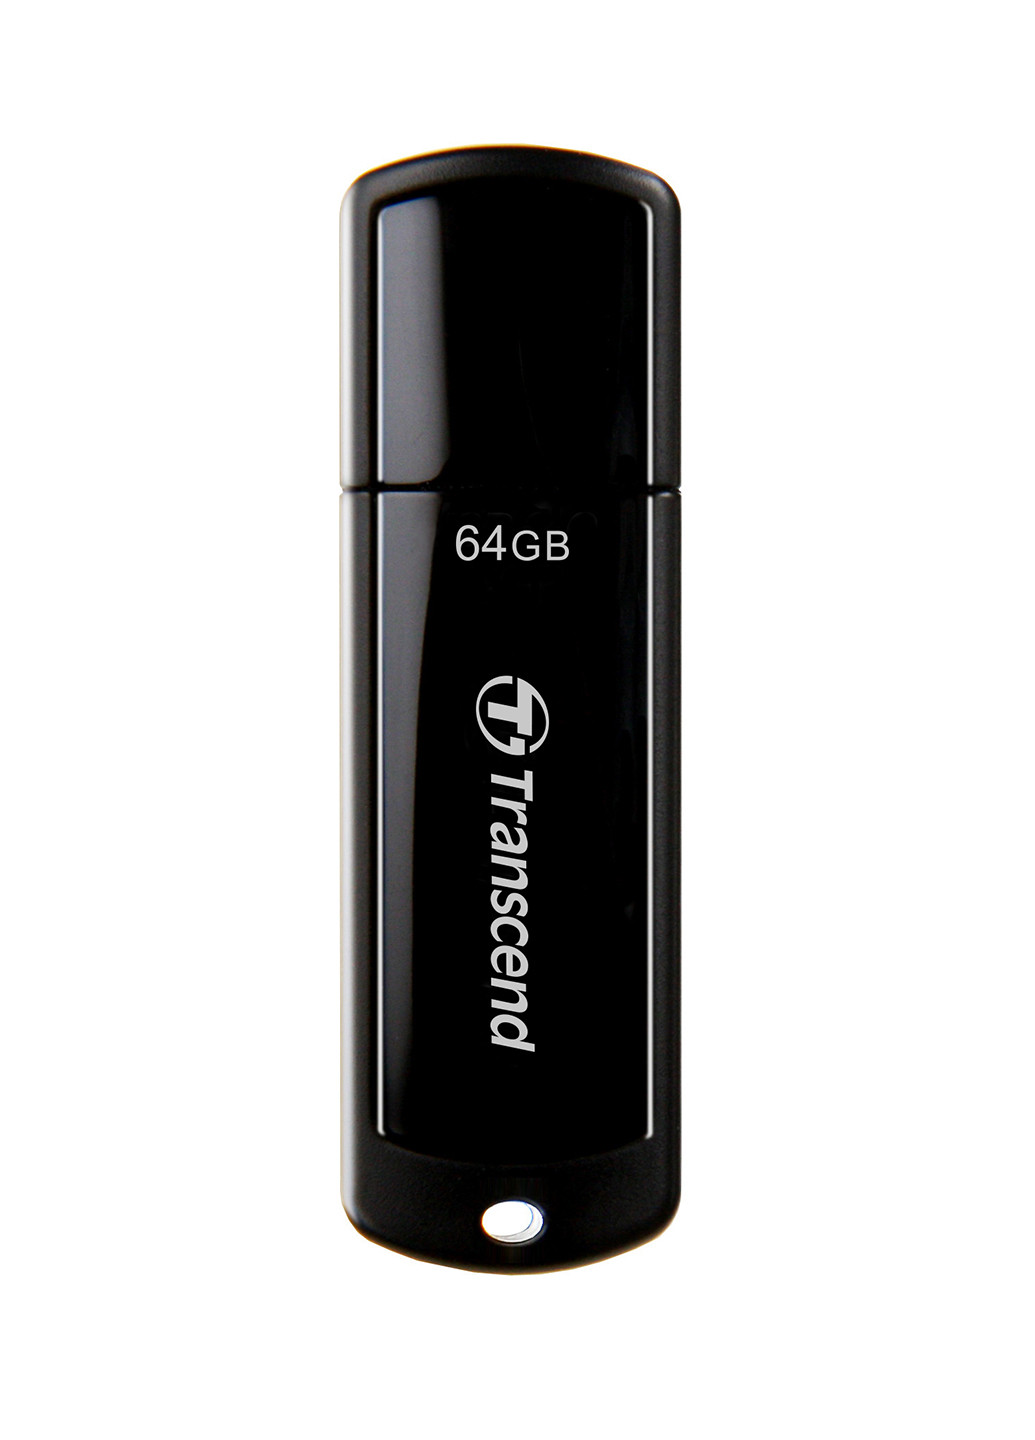 Флеш память USB JetFlash 700 64GB USB 3.0 Black (TS64GJF700) Transcend флеш память usb transcend jetflash 700 64gb usb 3.0 black (ts64gjf700) (135165476)